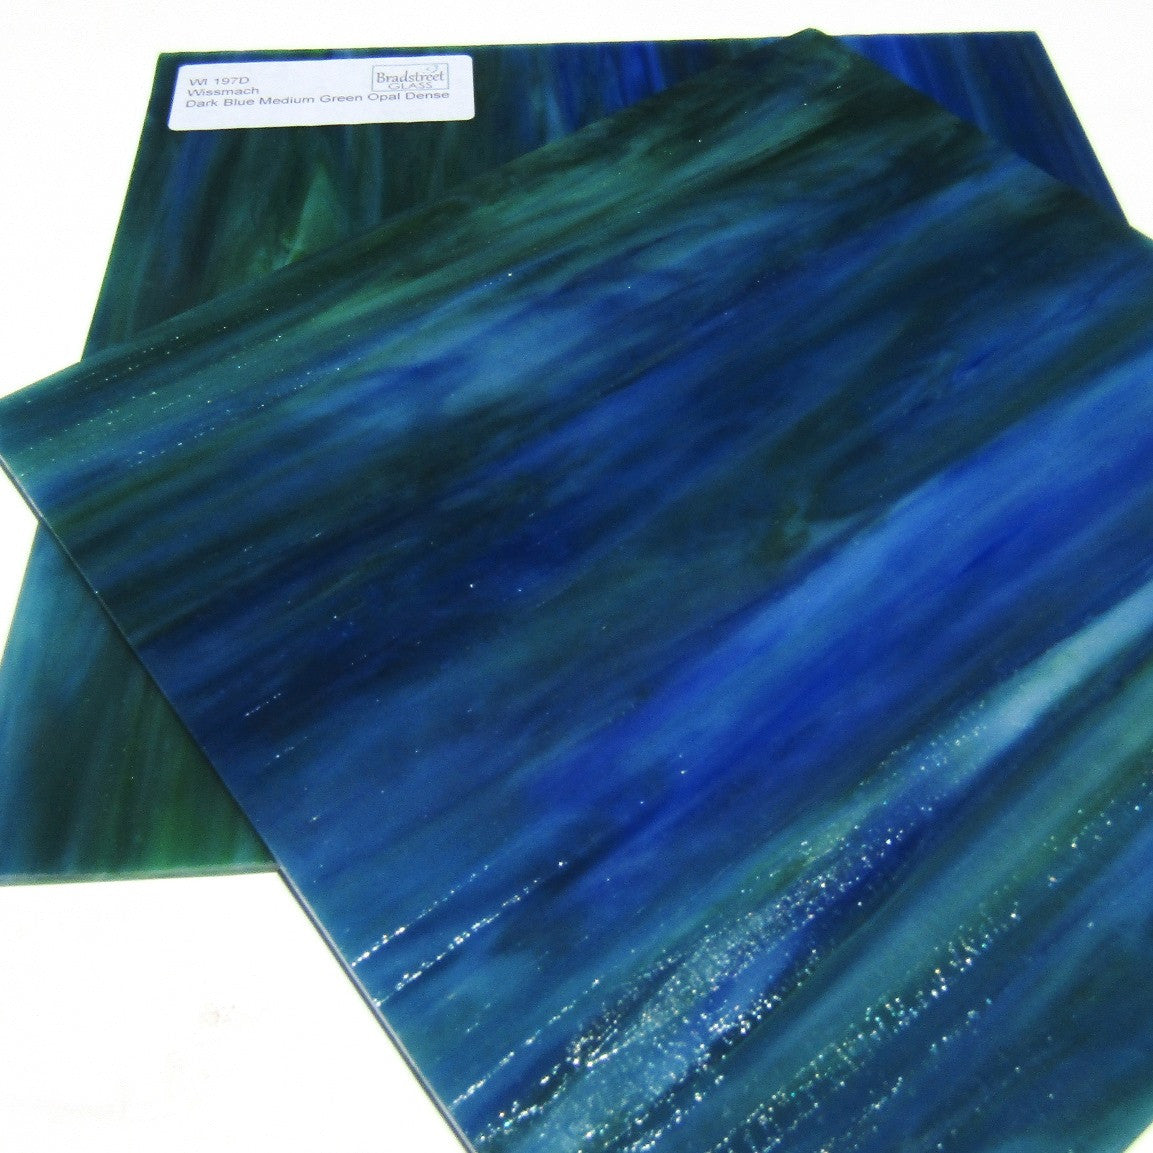 Wissmach 197D Stained Glass Sheet Dark Blue Medium Green Opal Dense 